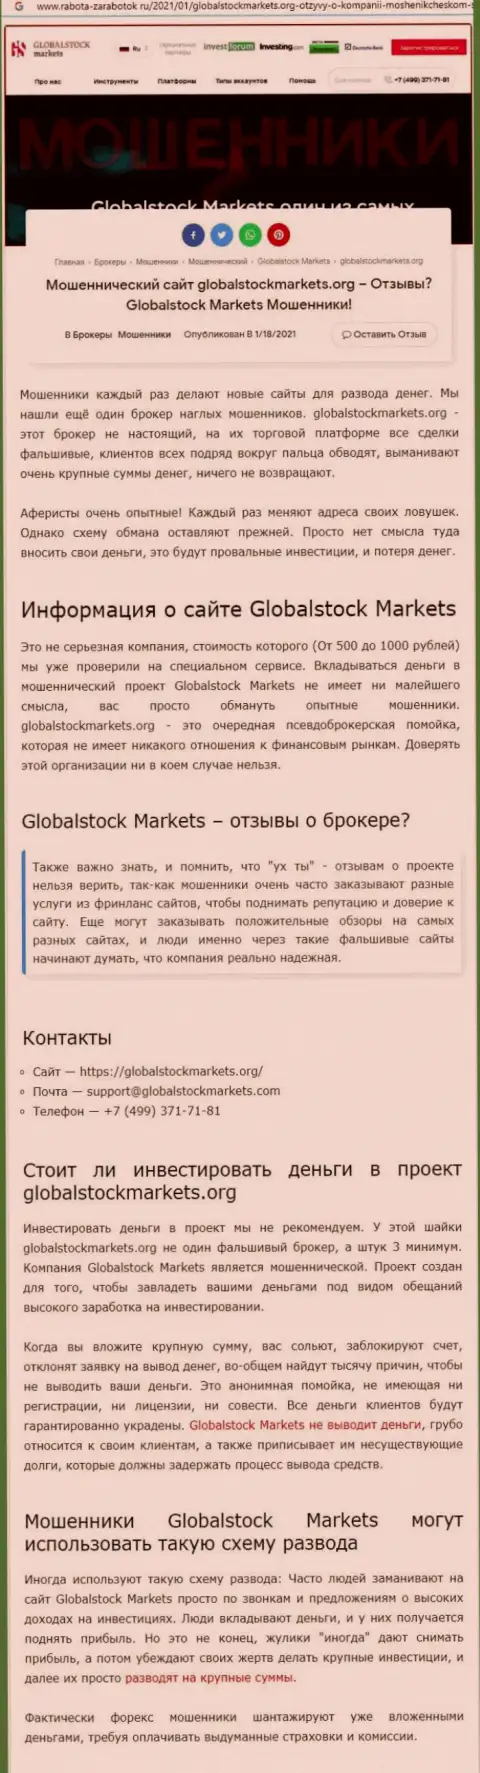 Global Stock Markets - это РАЗВОД НА ДЕНЕЖНЫЕ СРЕДСТВА !!! БУДЬТЕ КРАЙНЕ БДИТЕЛЬНЫ (обзорная статья)